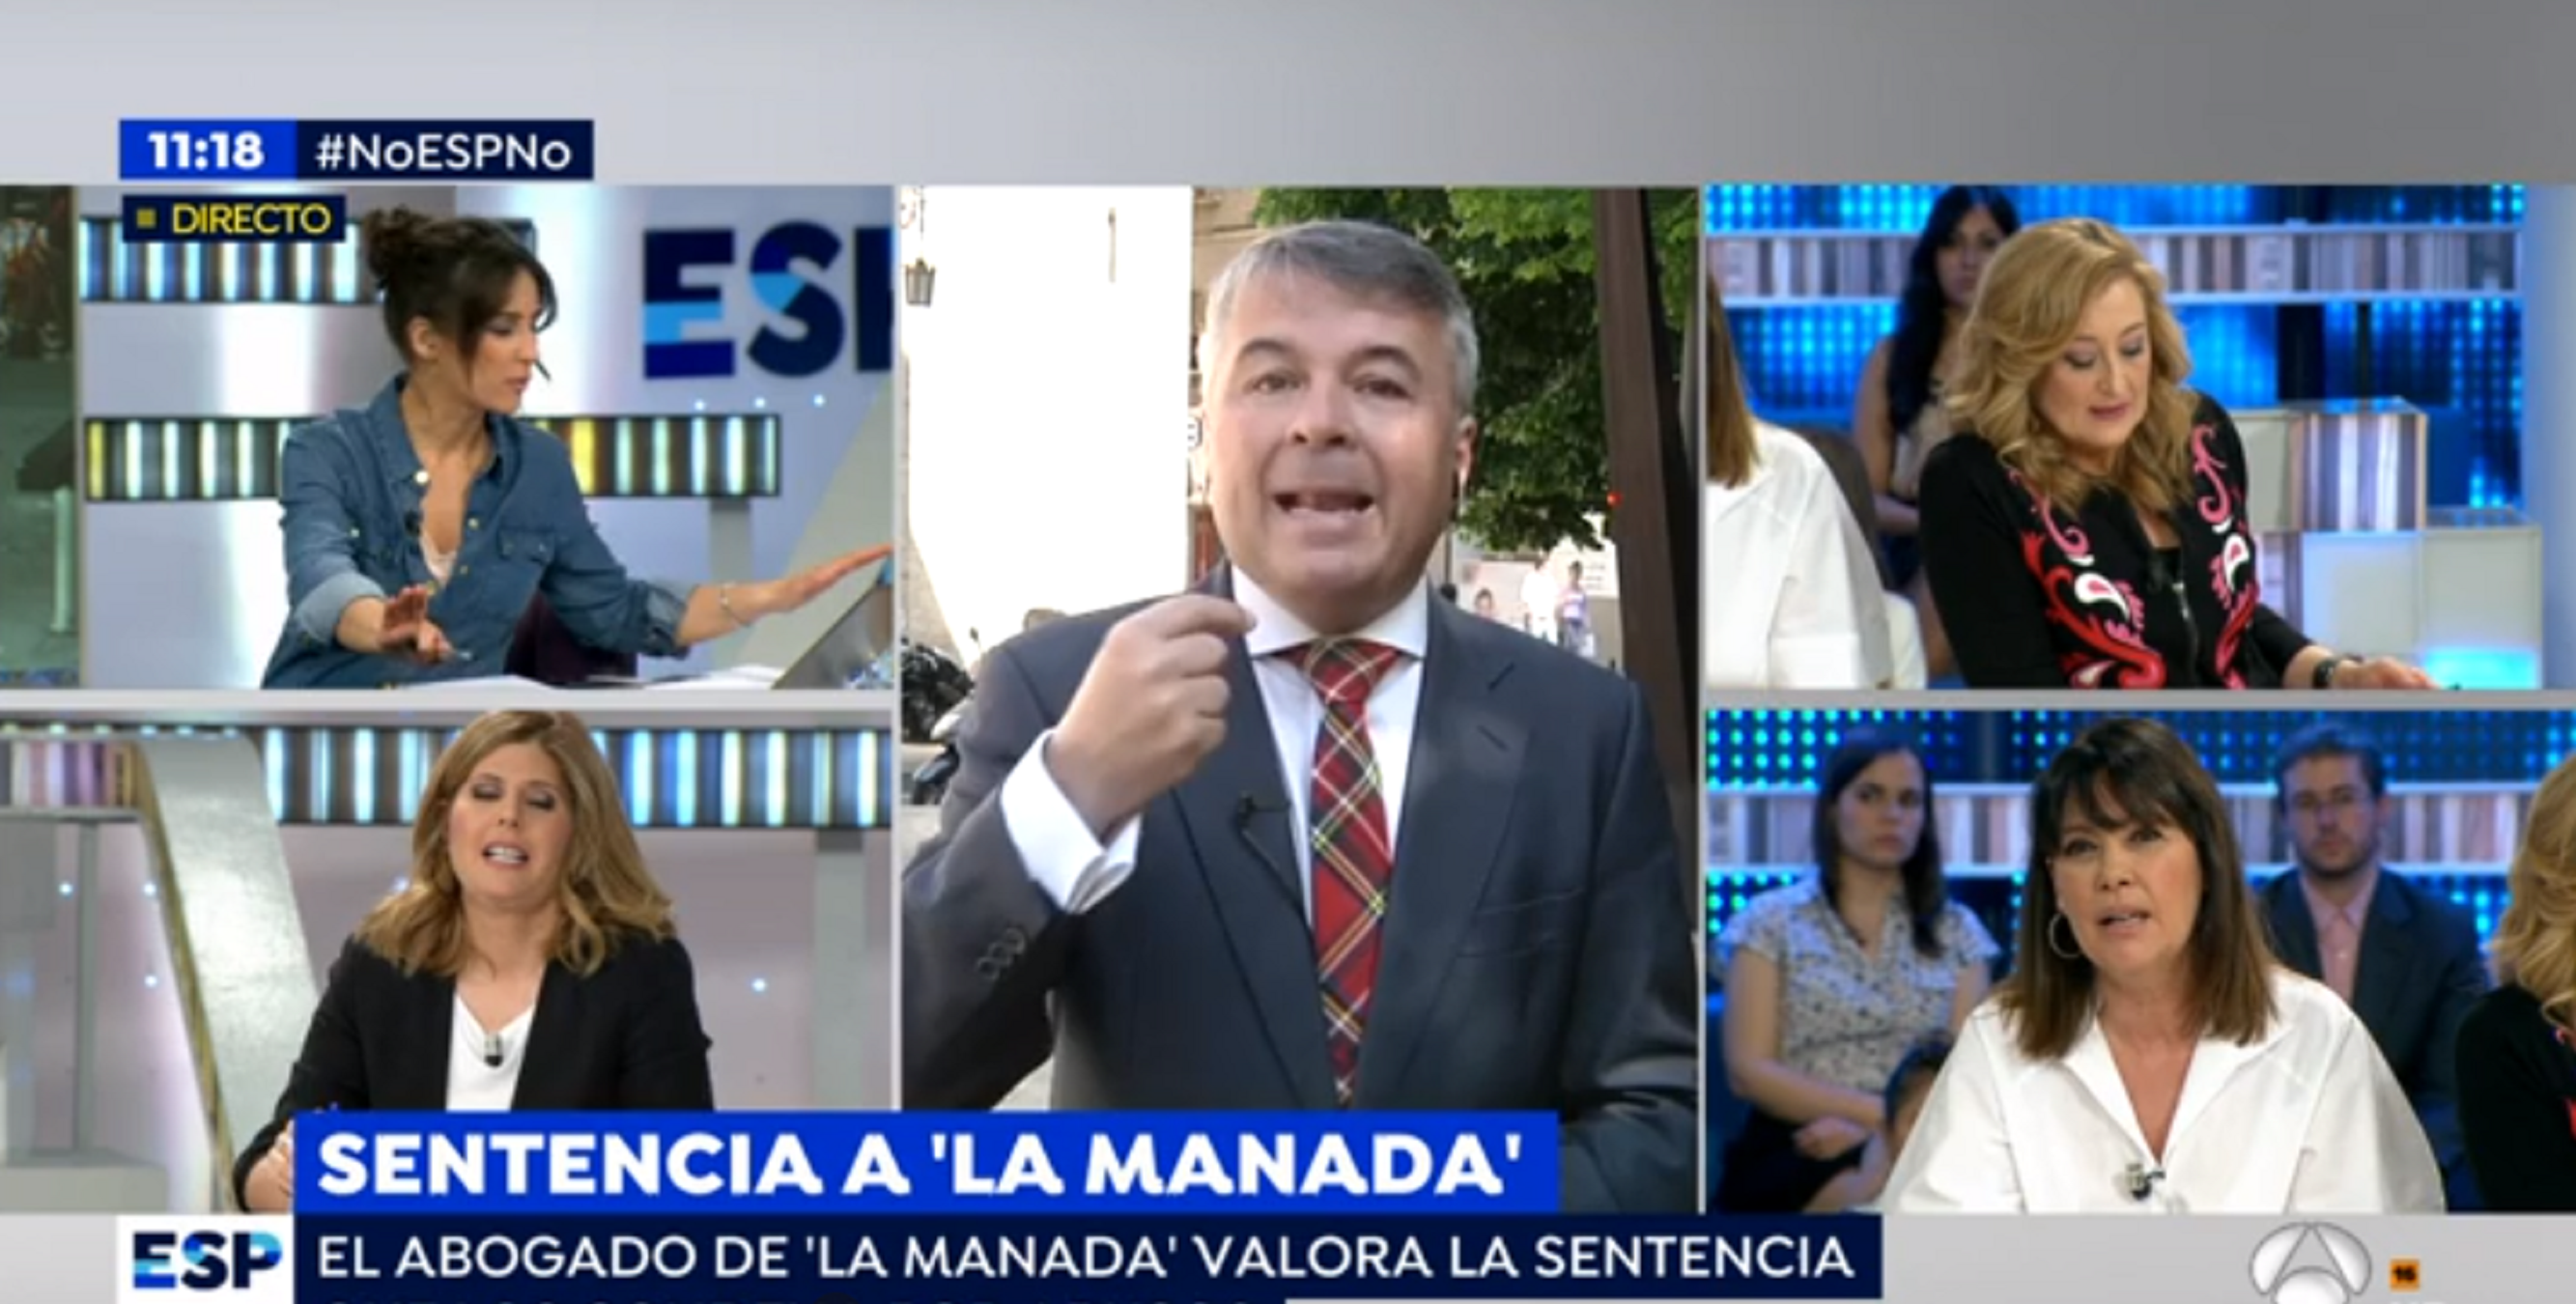 Insults a les tertulianes d'Antena 3 que critiquen La Manada: "¡Basura, histéricas!"